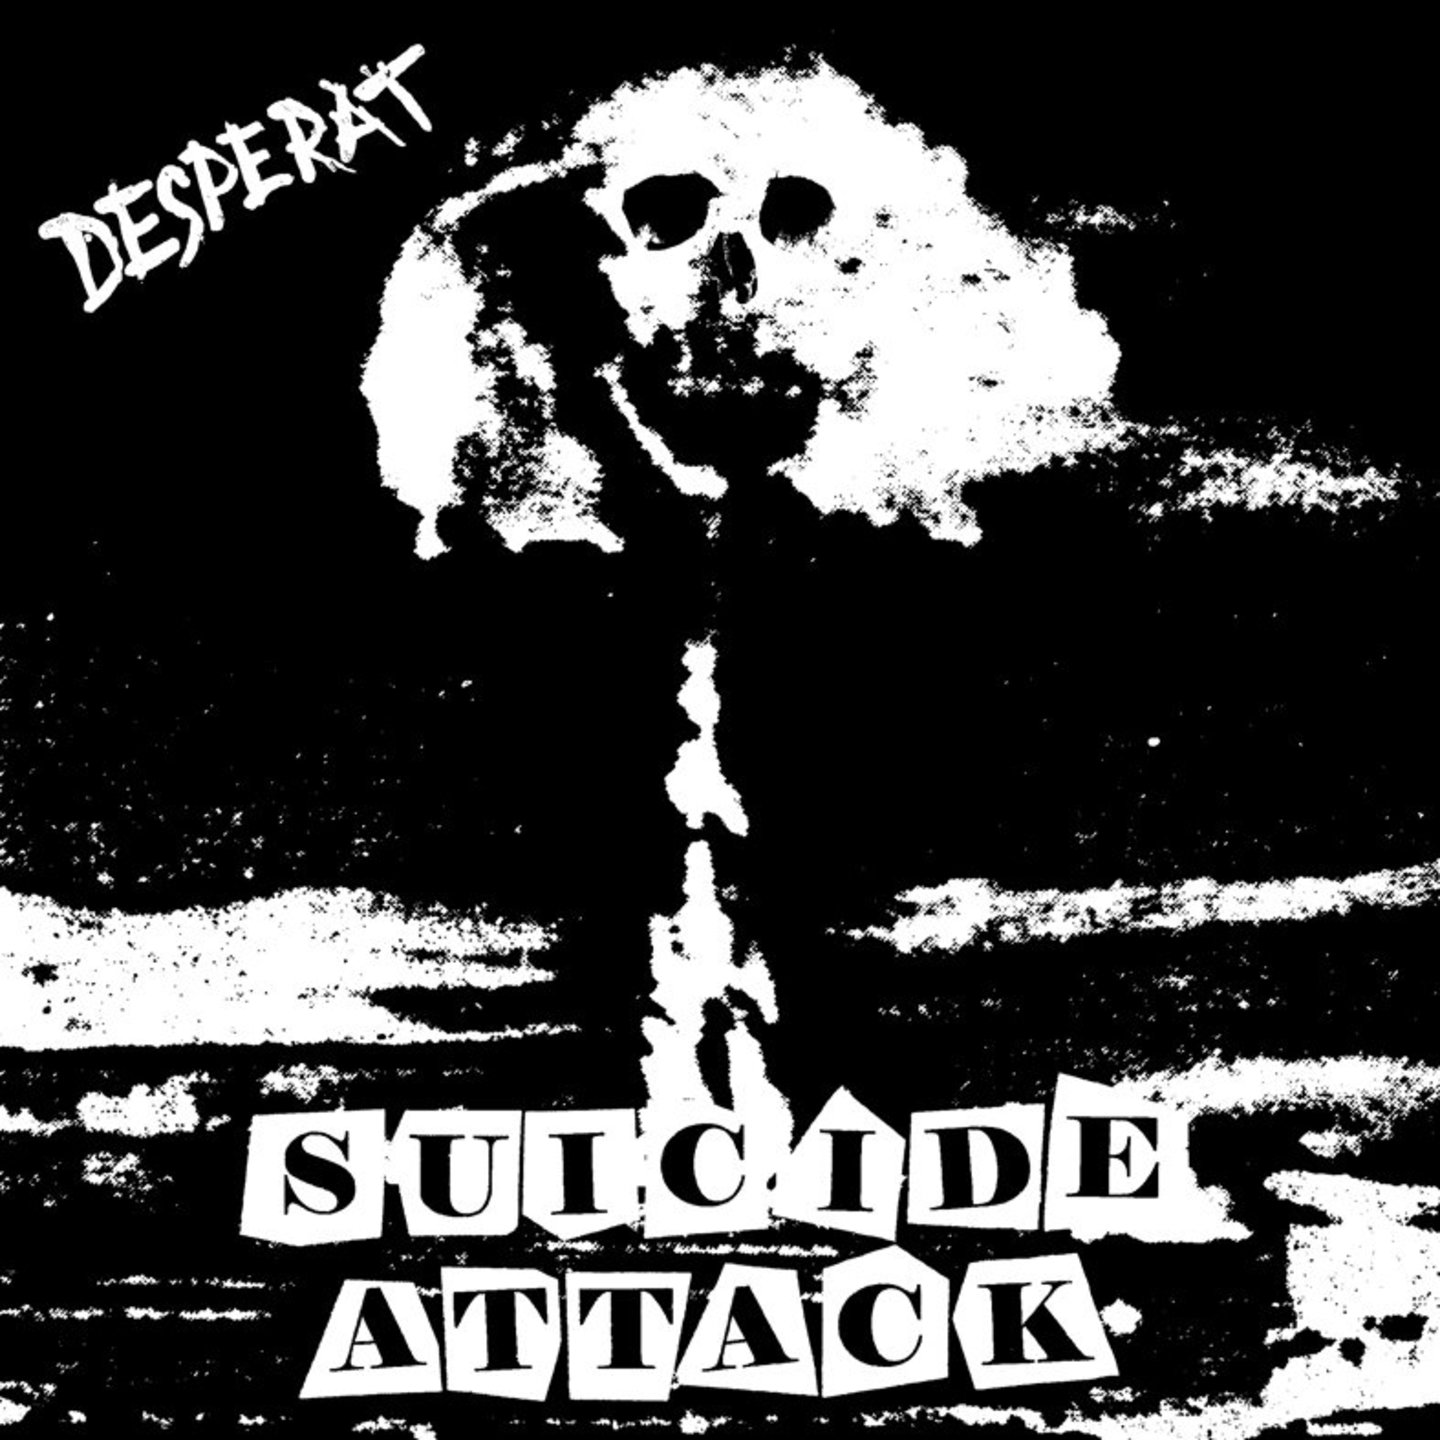 DESPERAT - Suicide Attack 7"